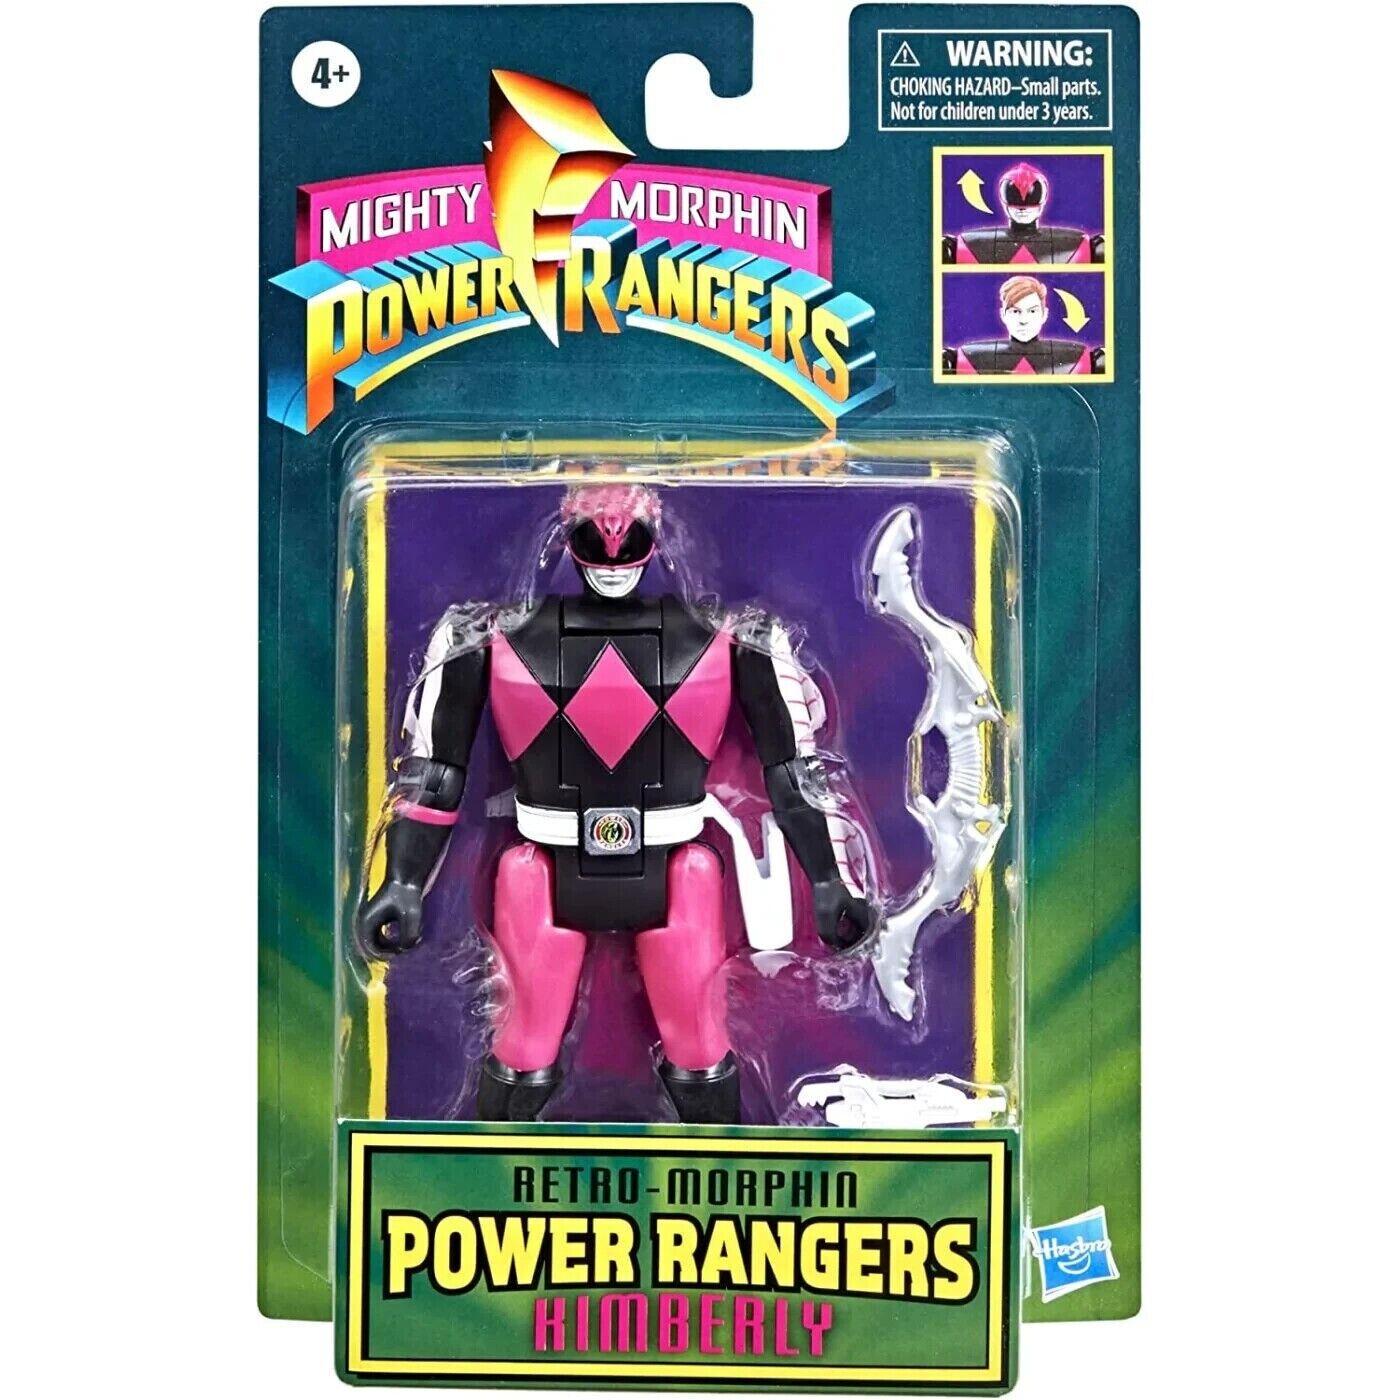 Mighty Morphin Power Rangers Kimberly Retro Morphin Pink 5" Inch Figure